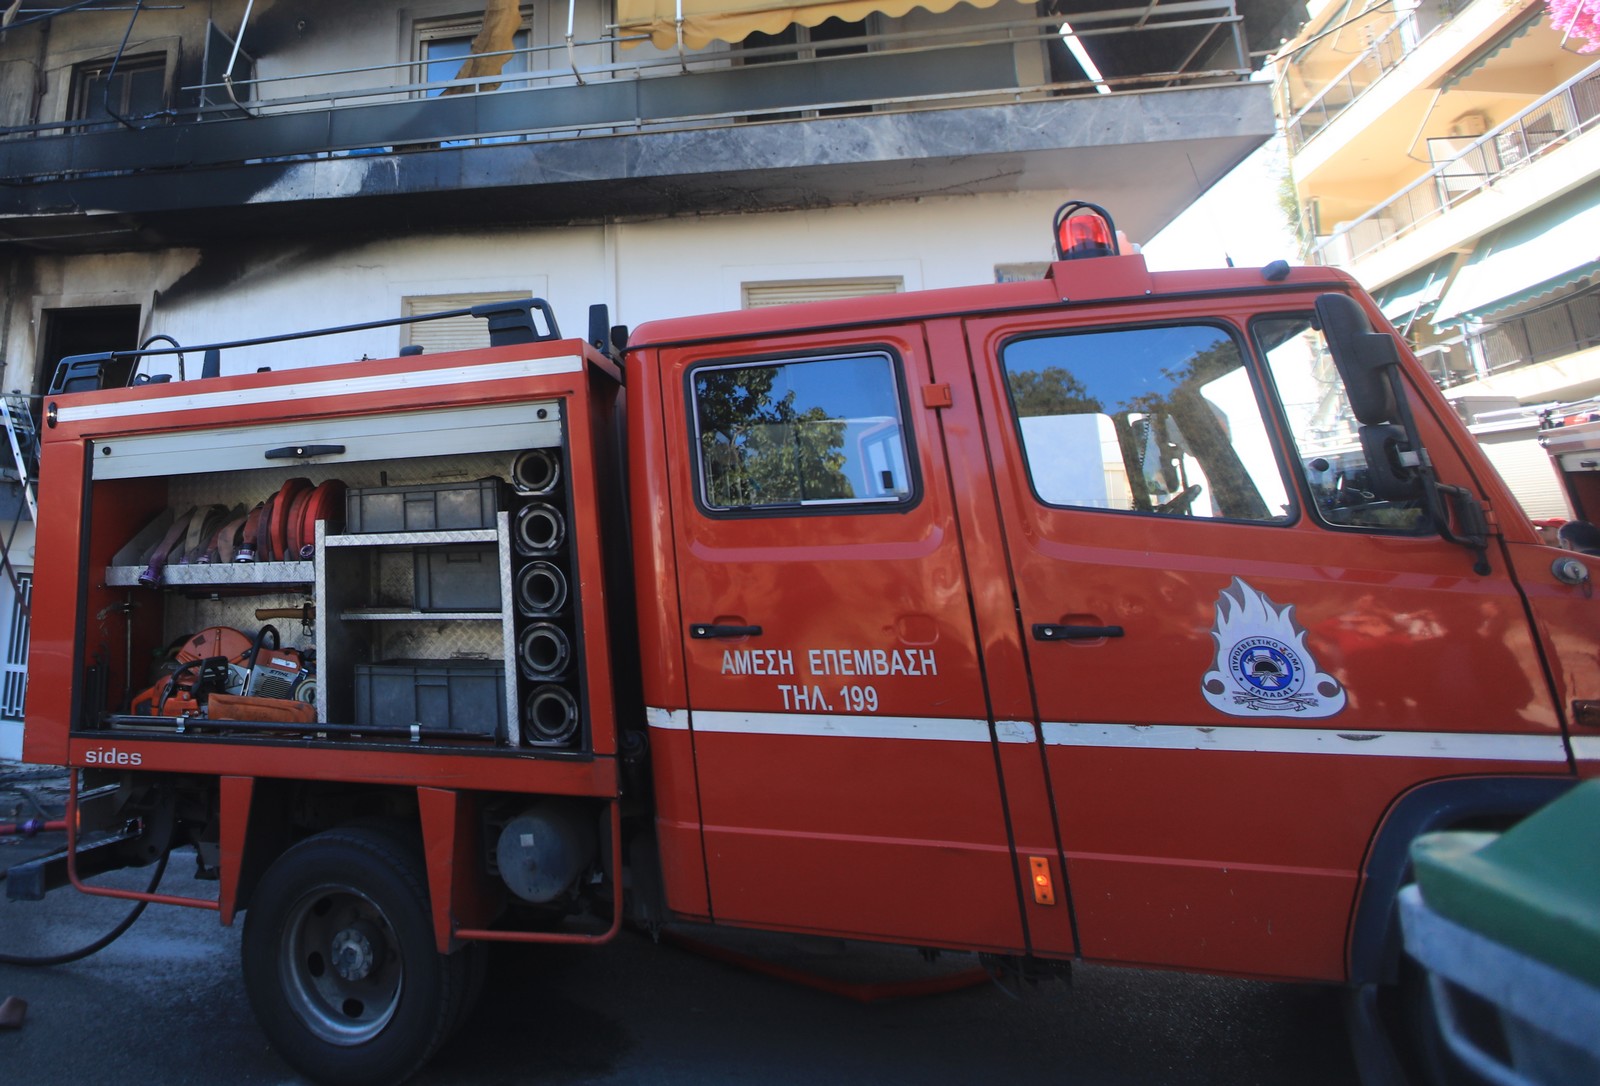 θεσσαλονίκη: έκρηξη σε διαμέρισμα στα μετέωρα